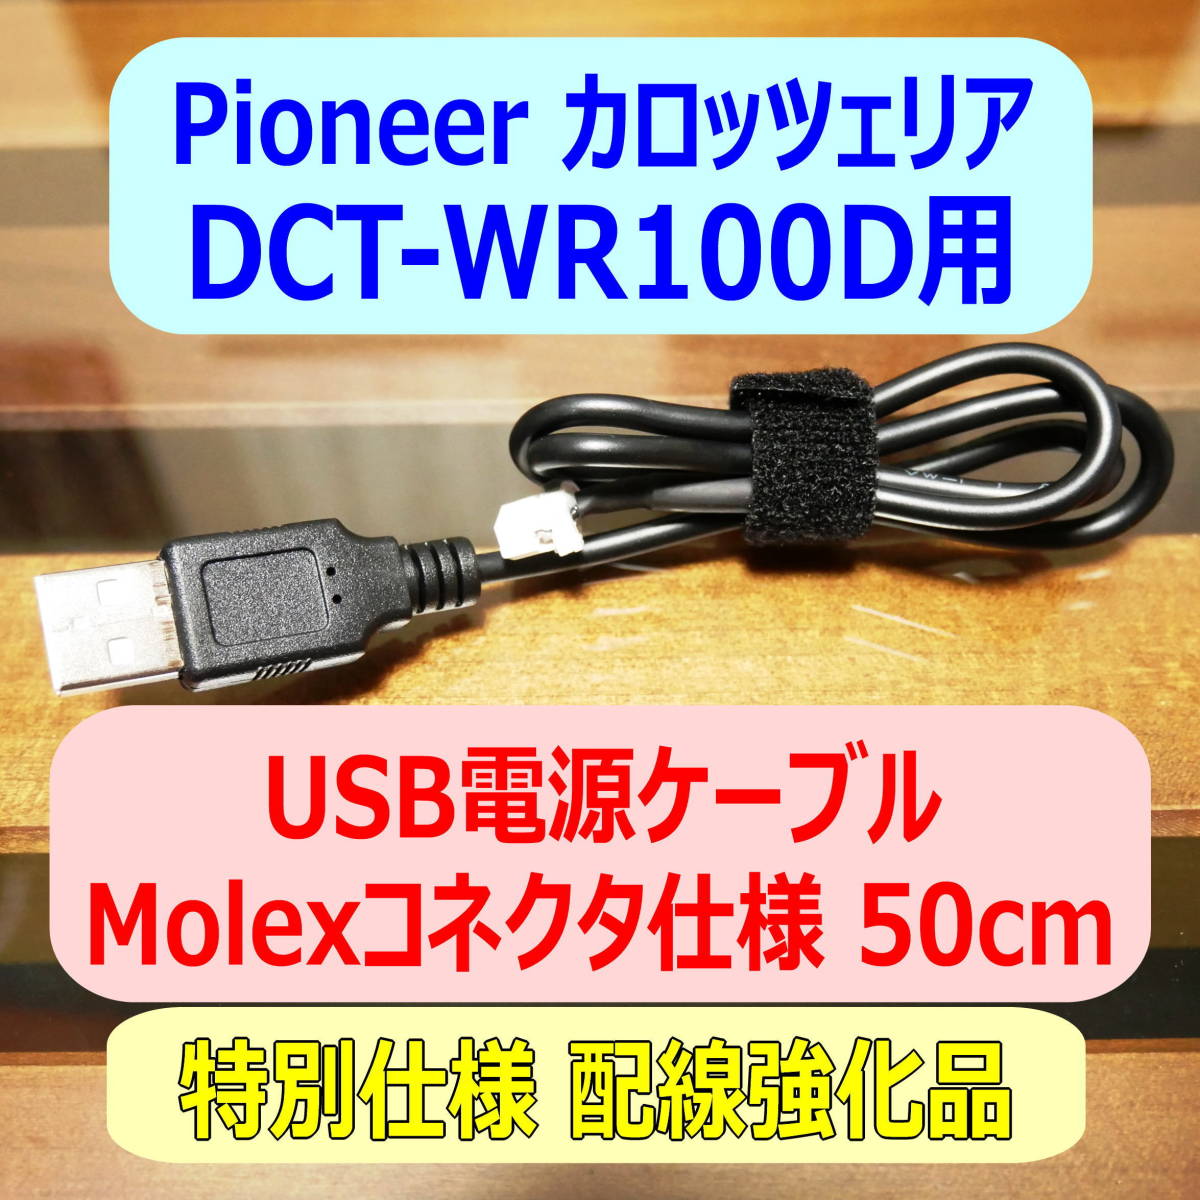 *② бесплатная доставка электропроводка усиленный товар DCT-WR100D для USB электрический кабель 50cm Molex коннектор *